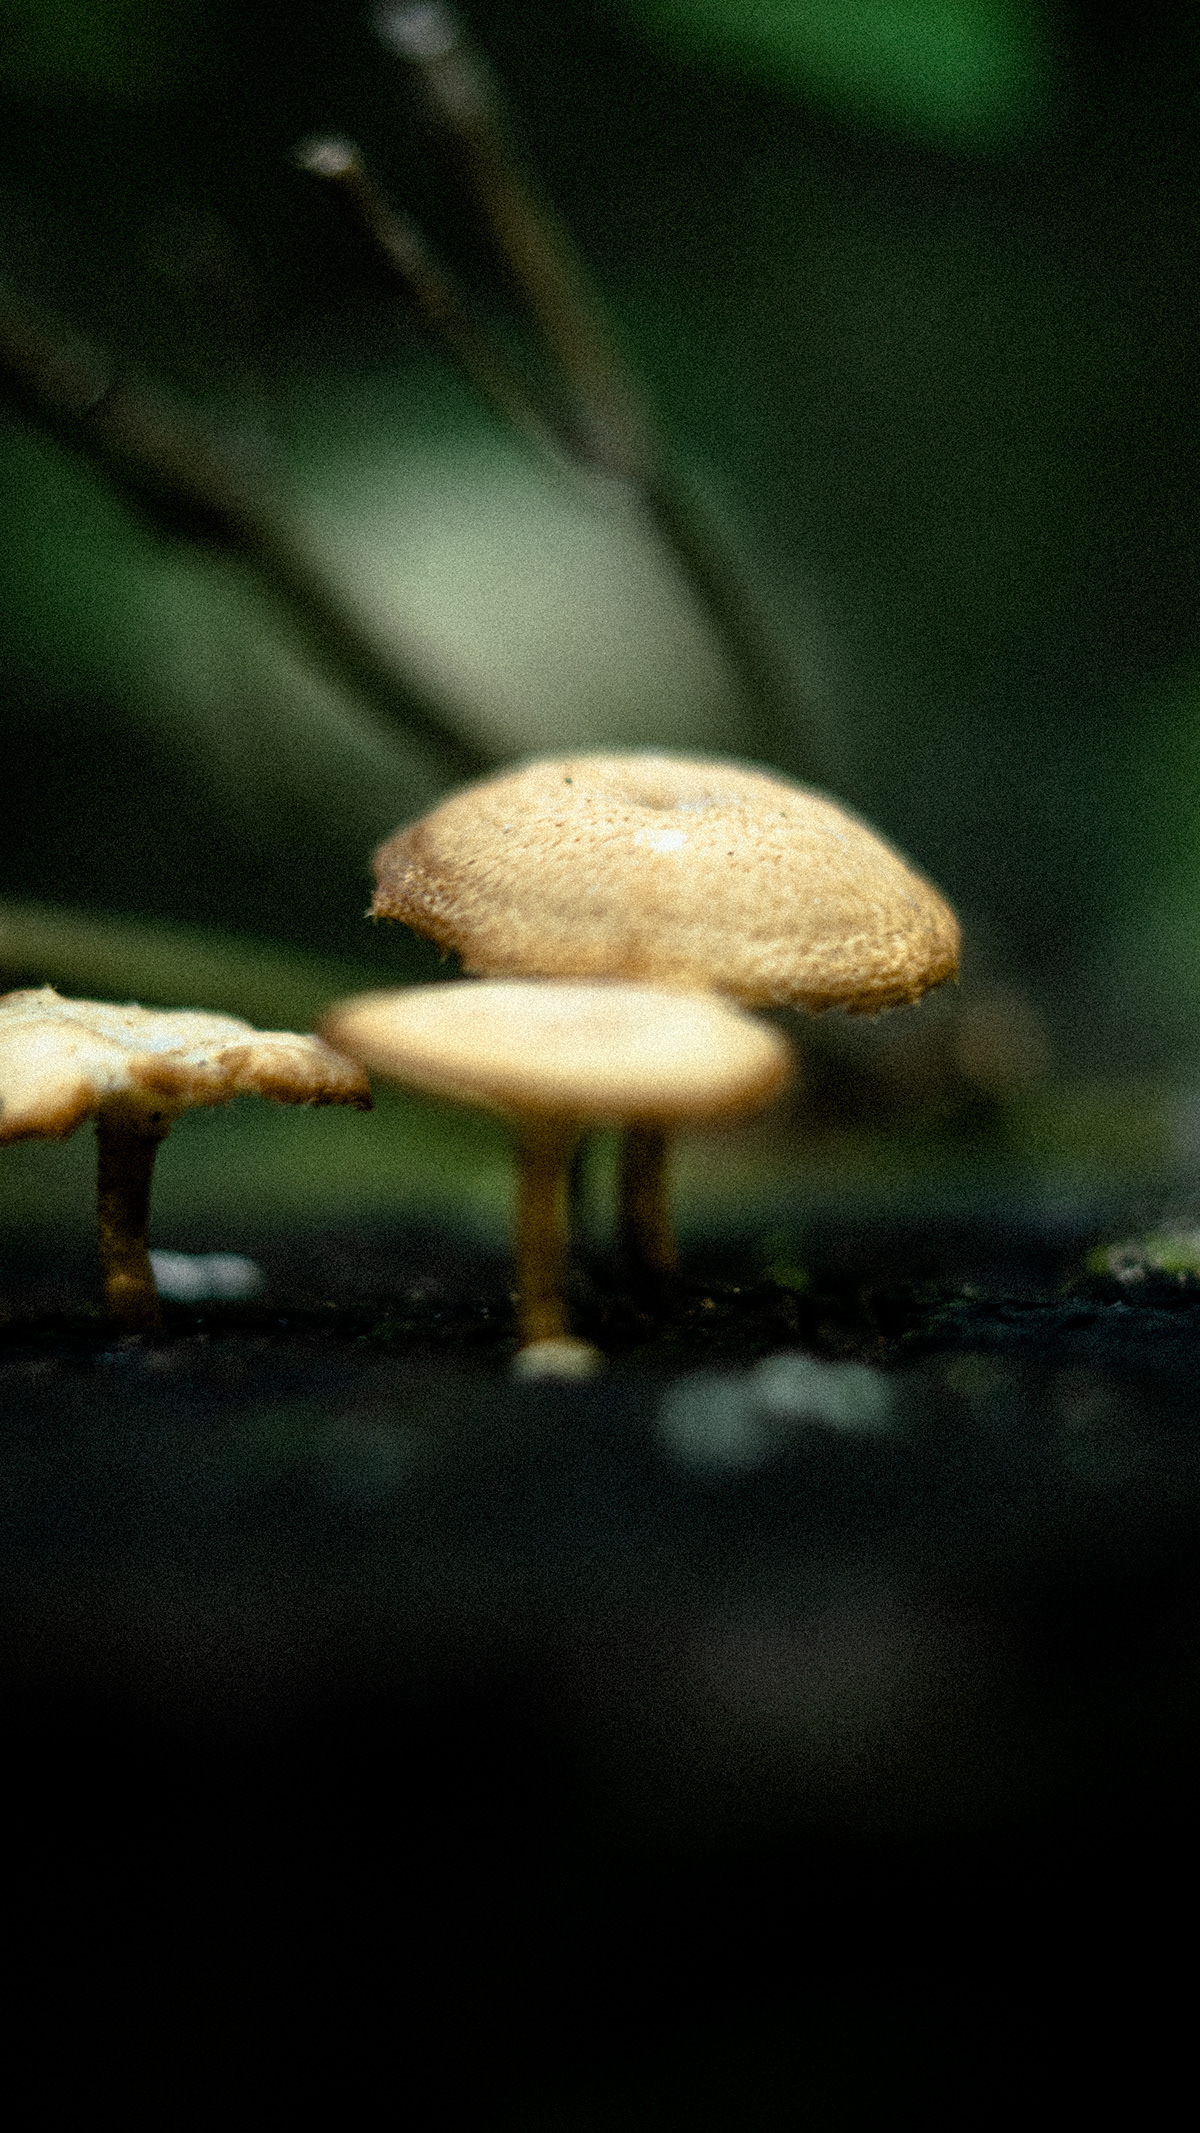 Image may contain: mushroom and fungus